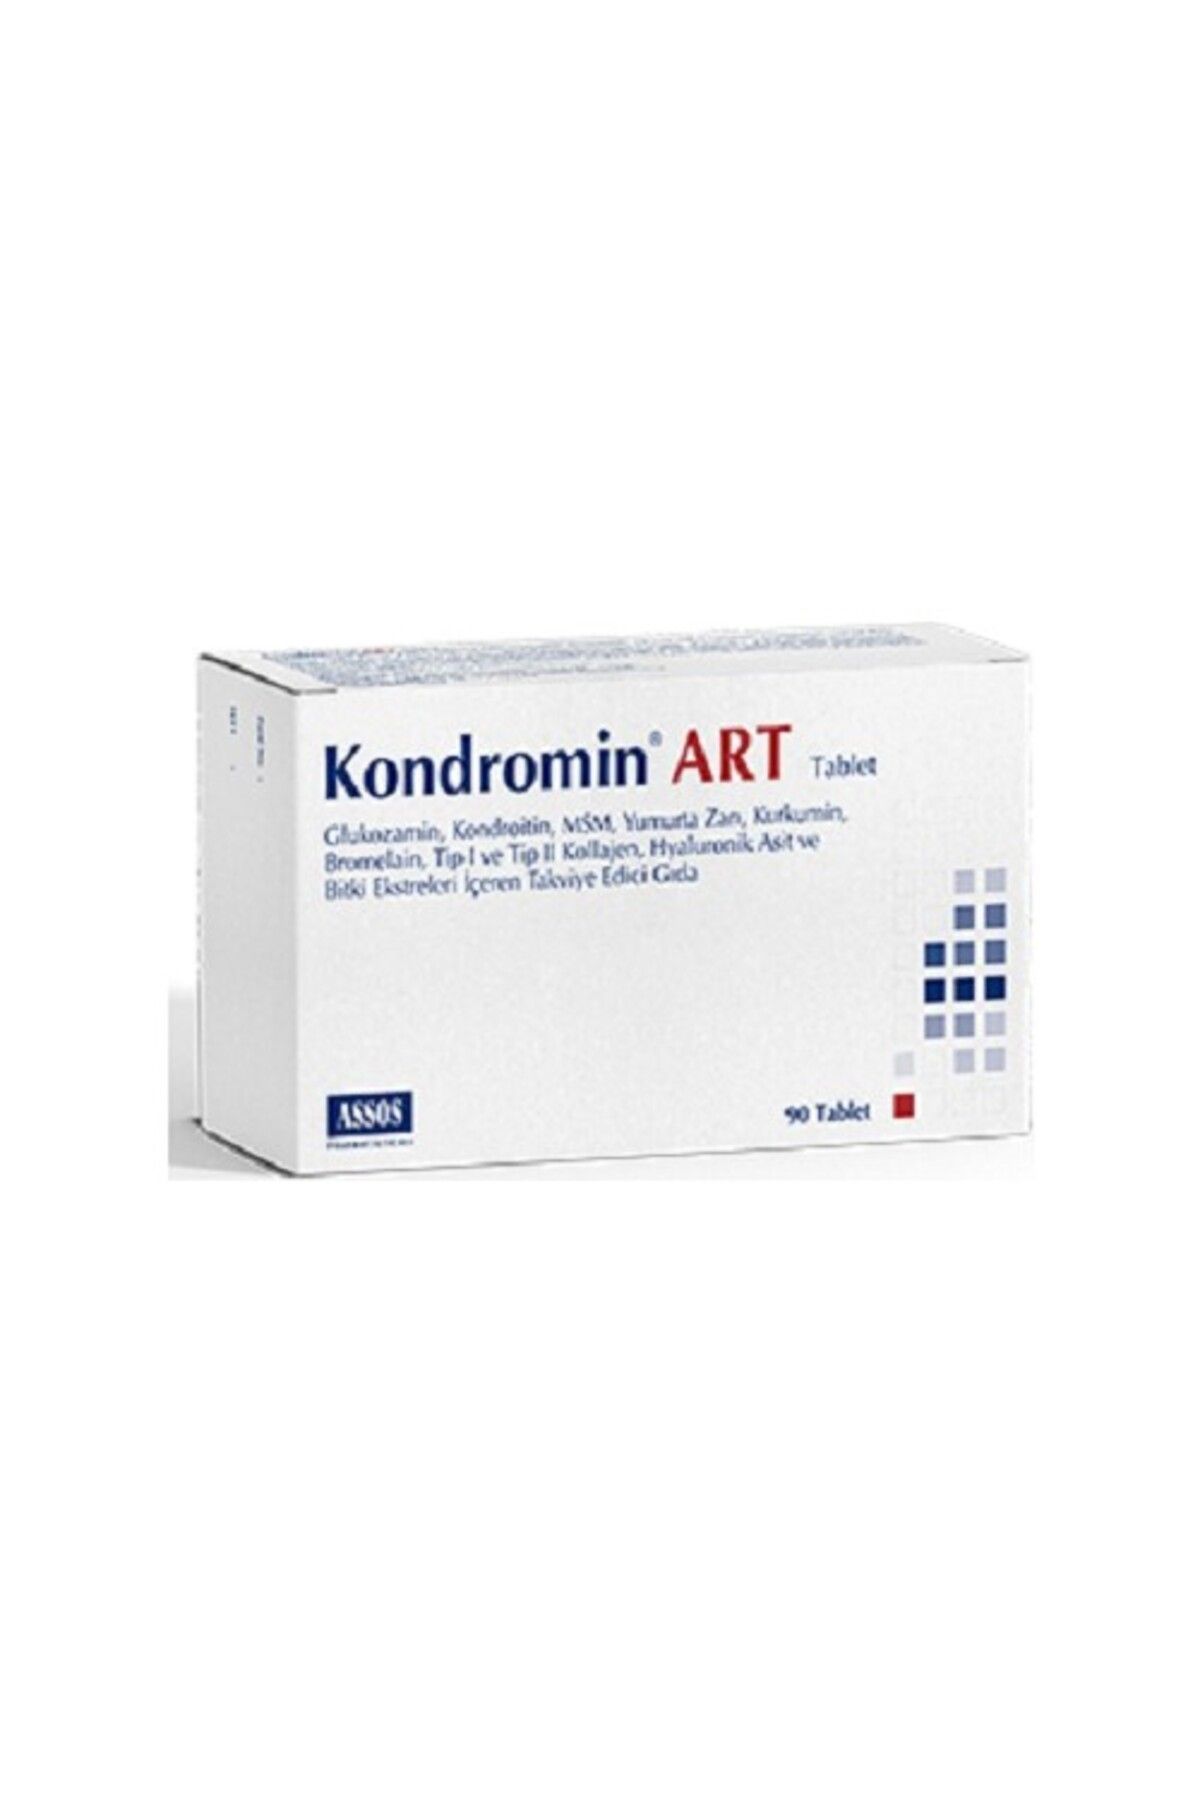 Assos Kondramin Art 90 Tablet